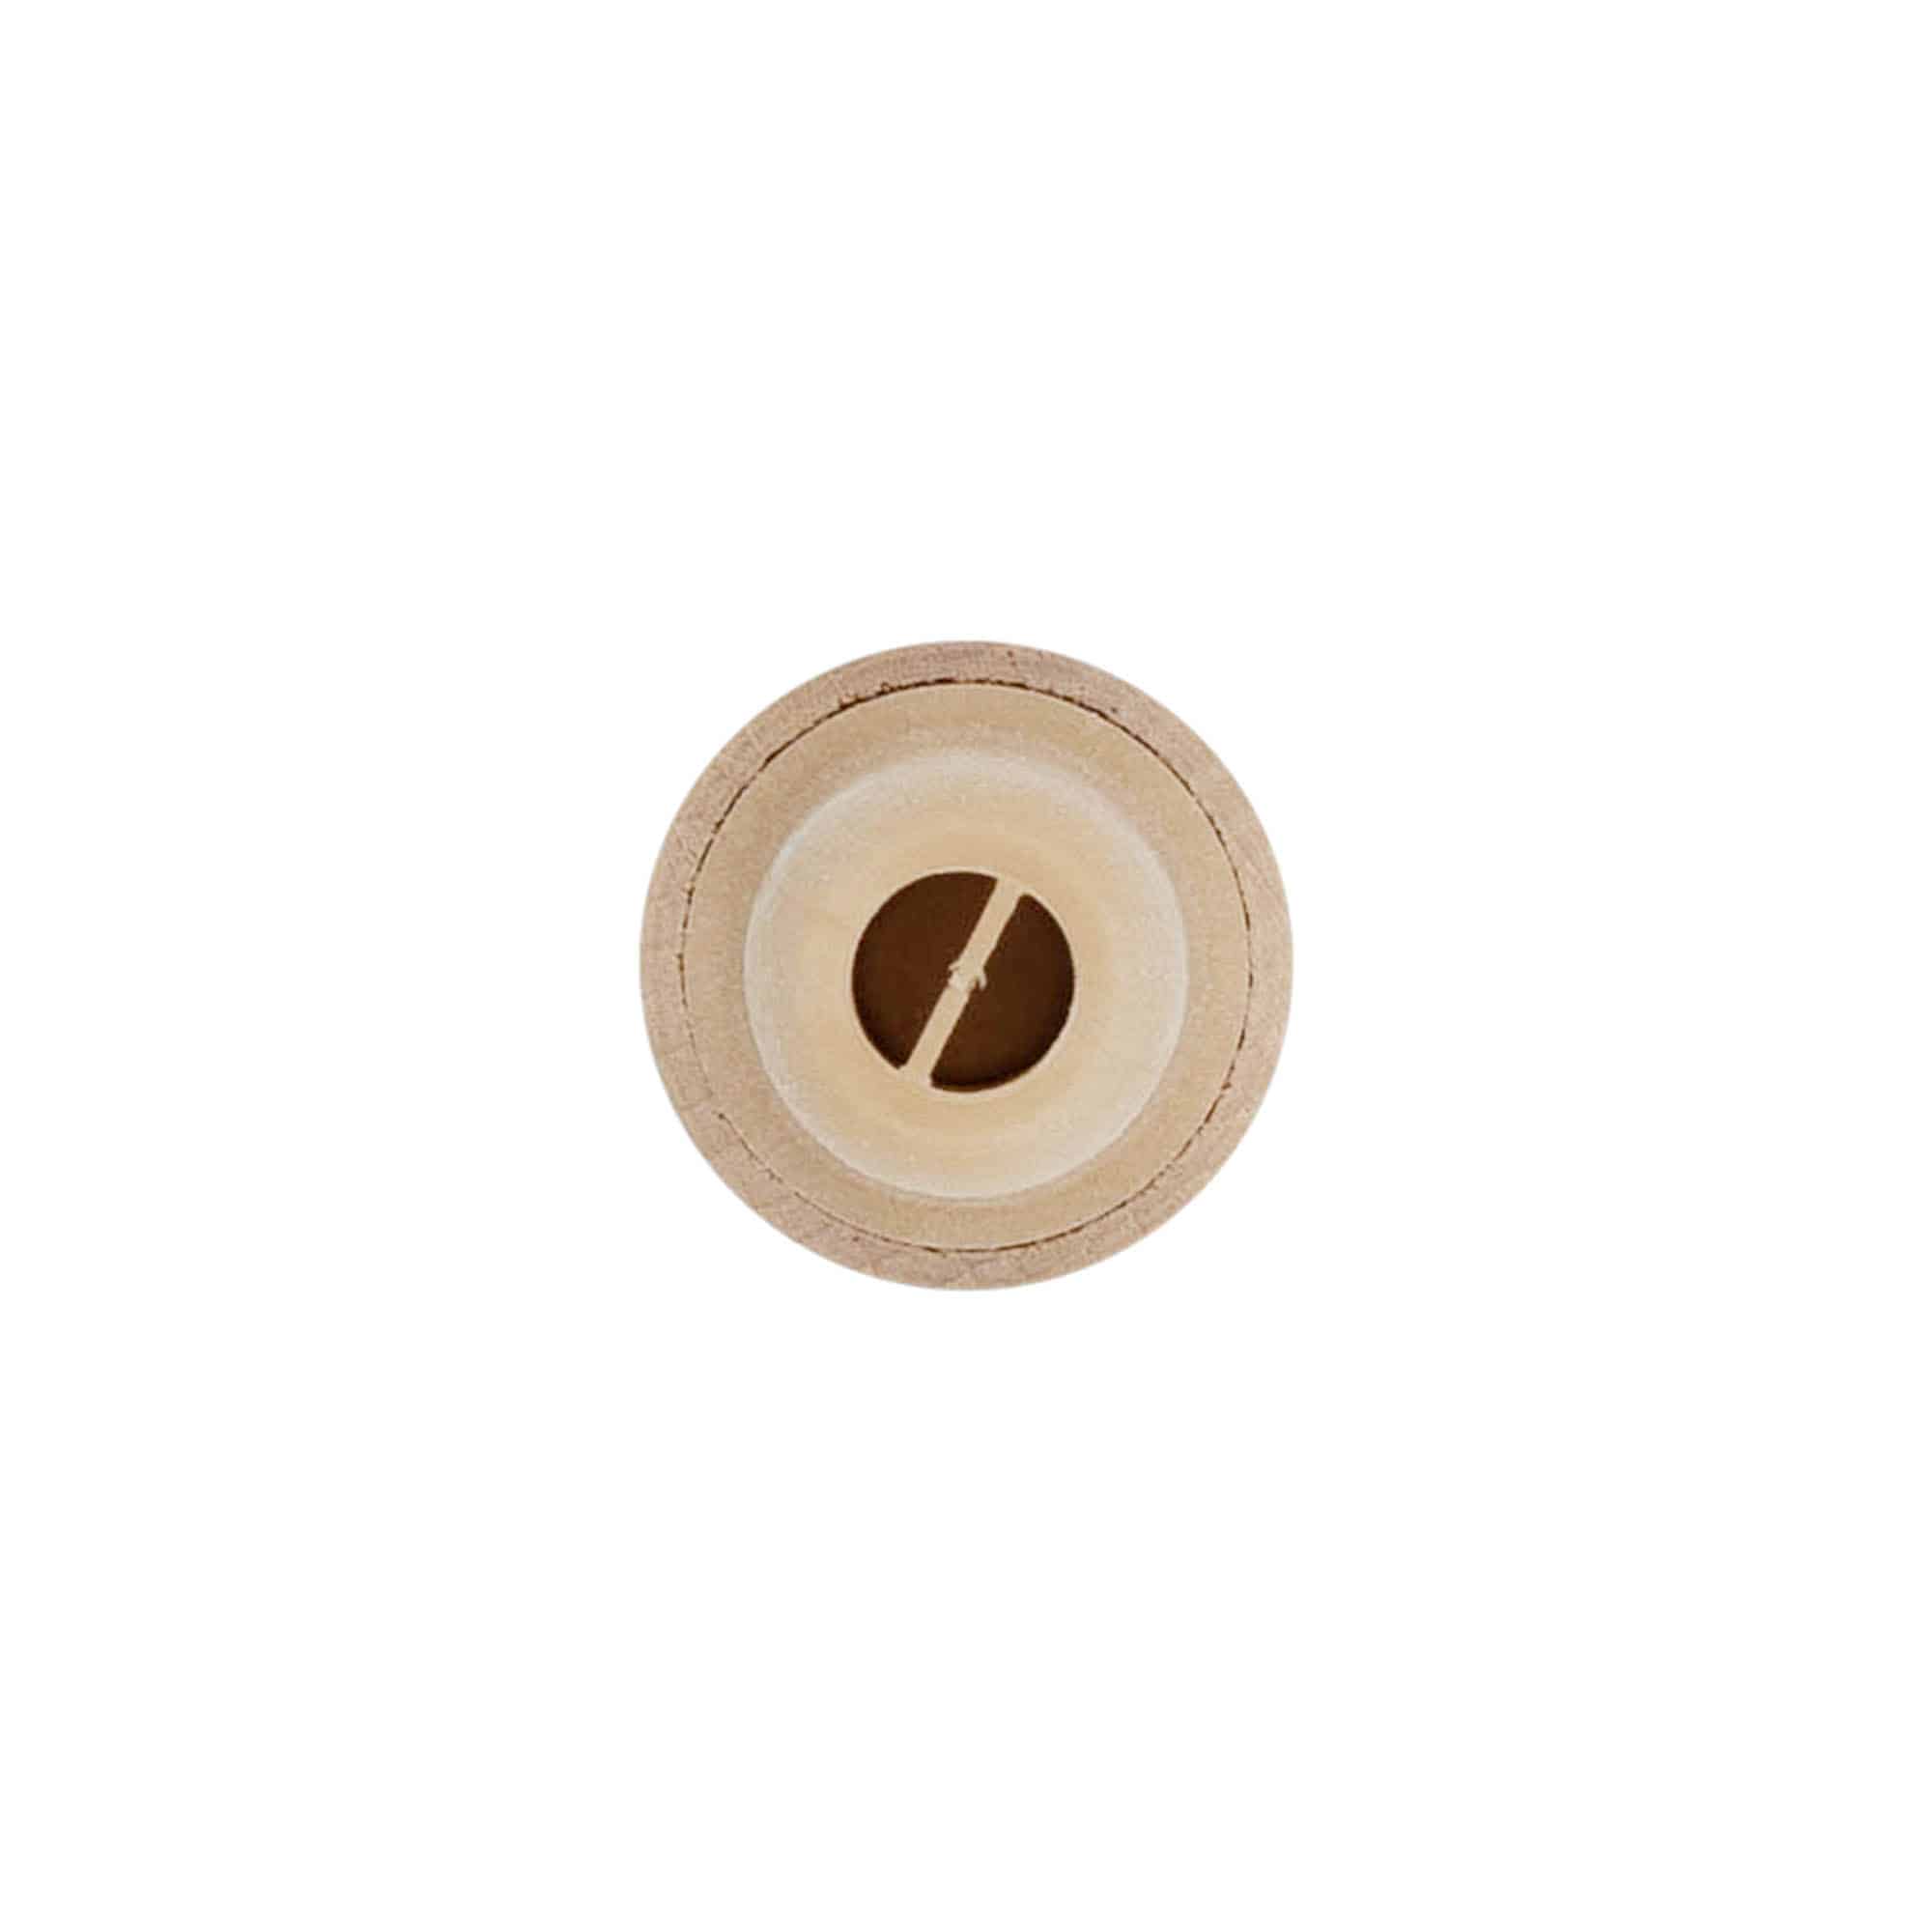 Dopkurk met doseeropening, 19 mm, kunststof-hout, meerkleurig, voor monding: kurk